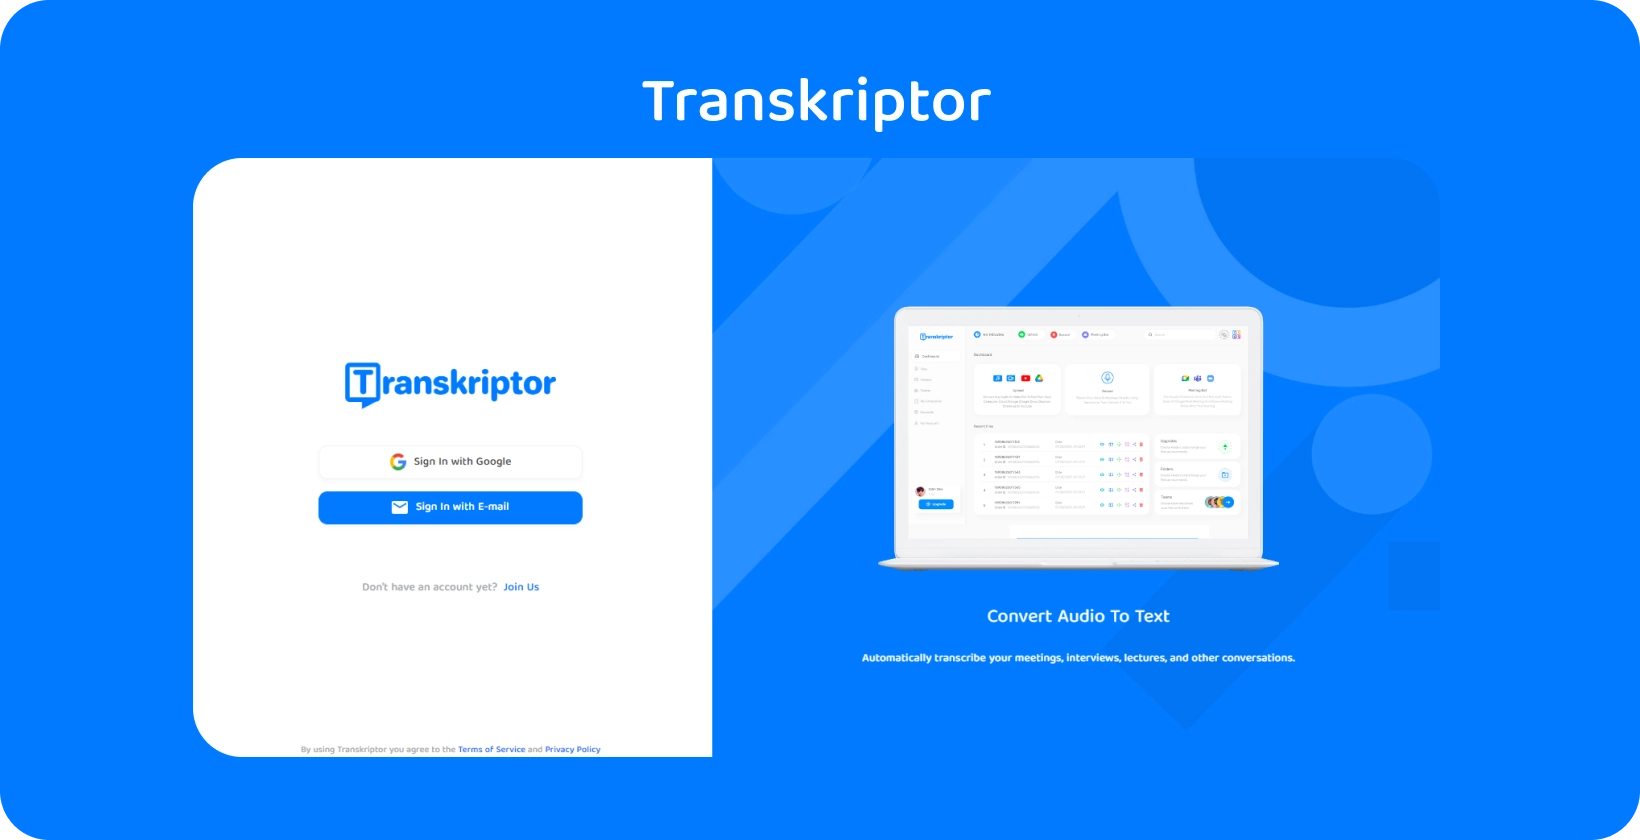 Transkriptor interface do aplicativo apresentando serviços fáceis de transcrição de áudio para texto para insights de registros médicos.